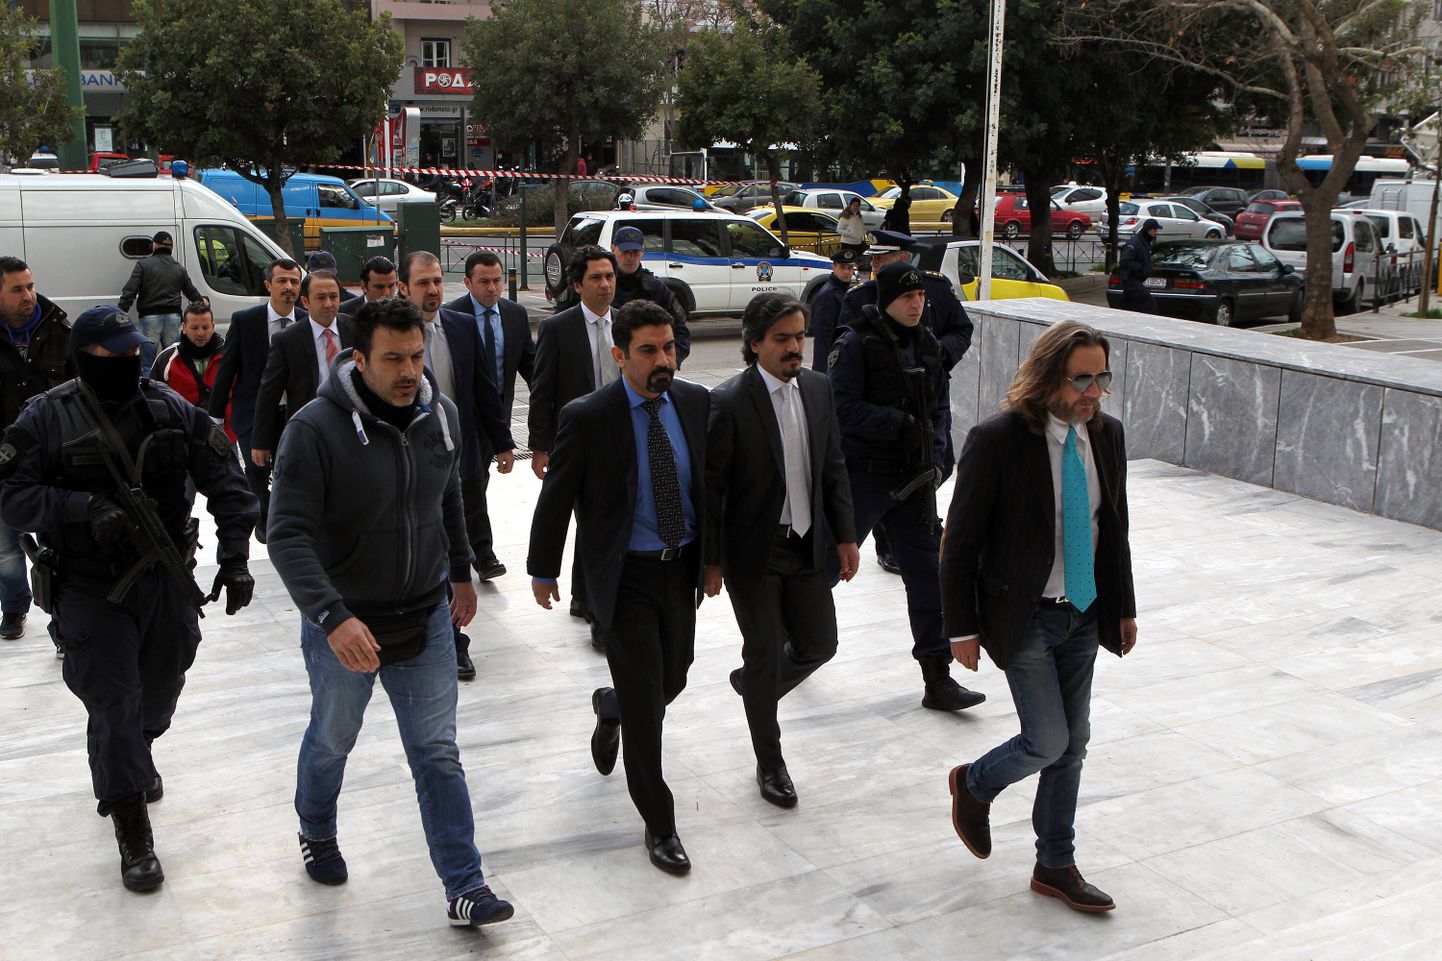 Türgi ohvitserid Kreeka kohtusse liikumas.